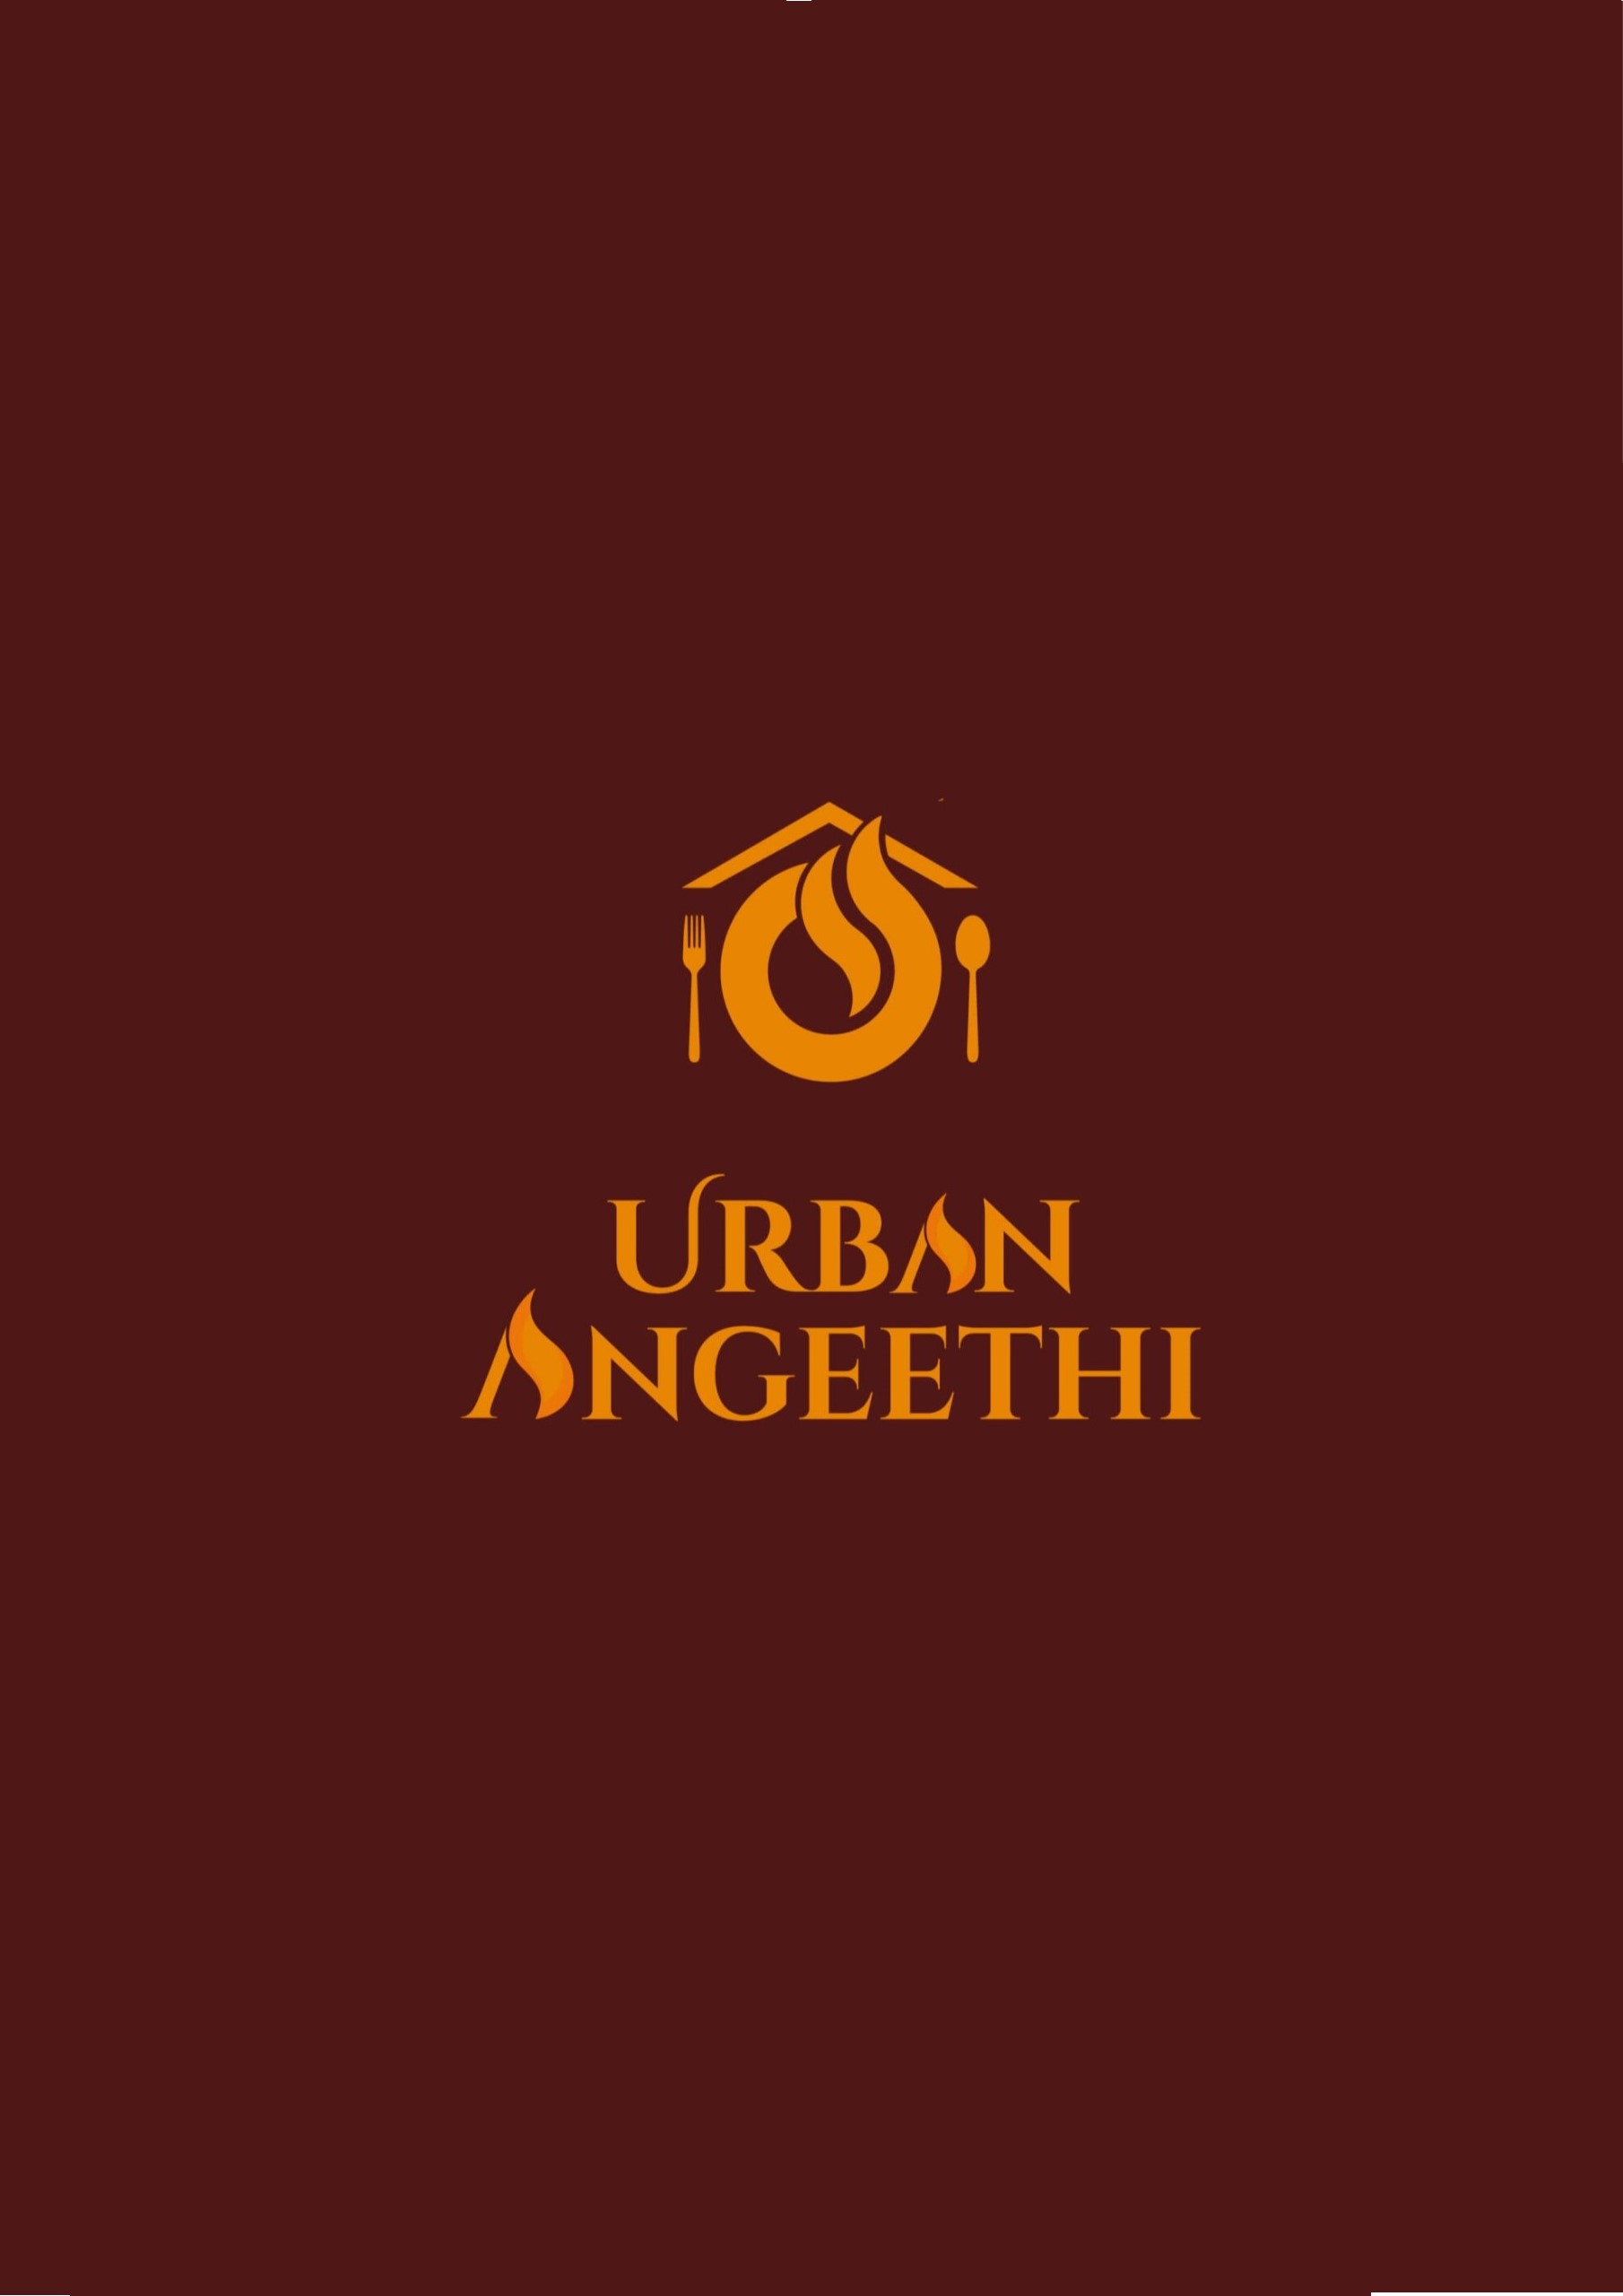 Urban-Angeethi-Menu0-2-1